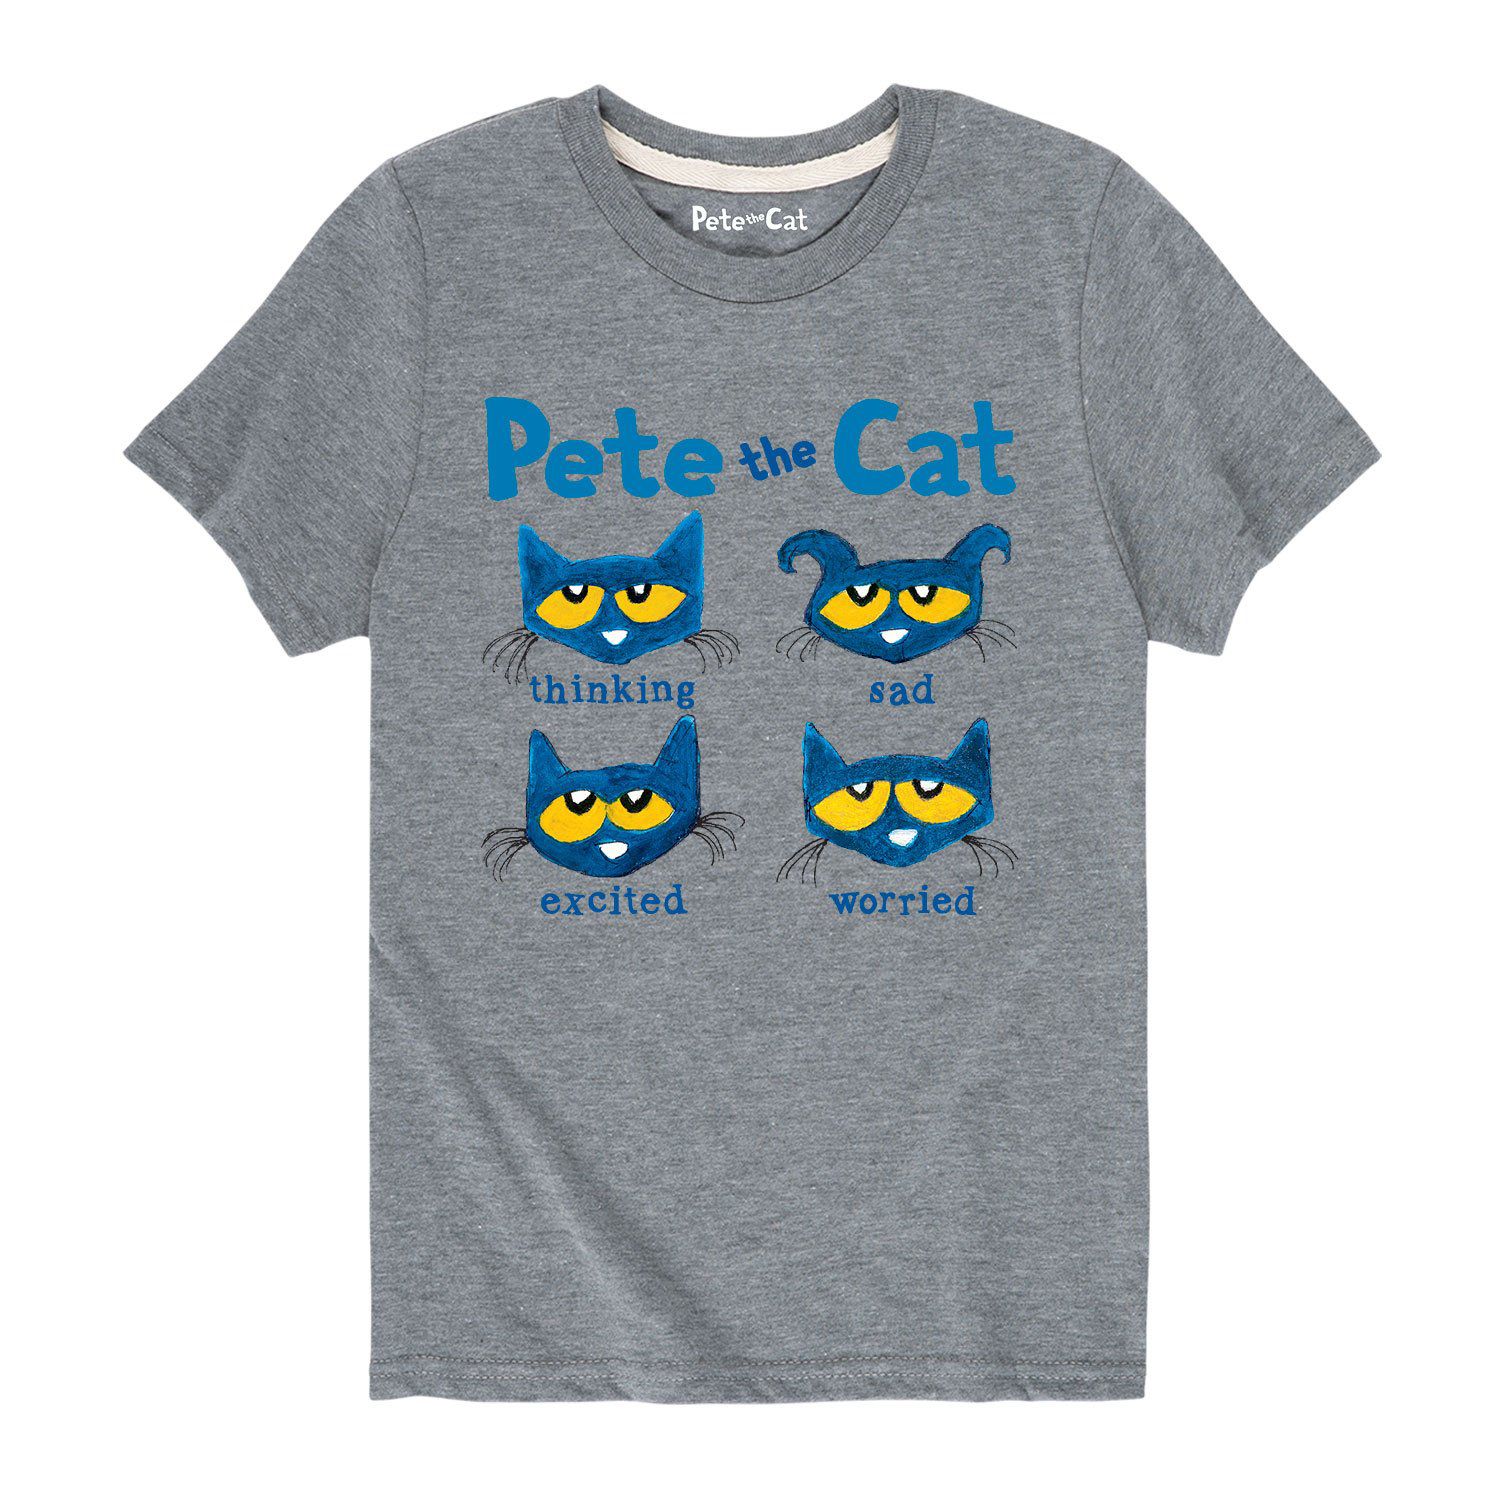 Футболка с рисунком Pete The Cat Faces для мальчиков 8–20 лет Licensed Character футболка groovy с рисунком pete the cat для мальчиков 8–20 лет licensed character